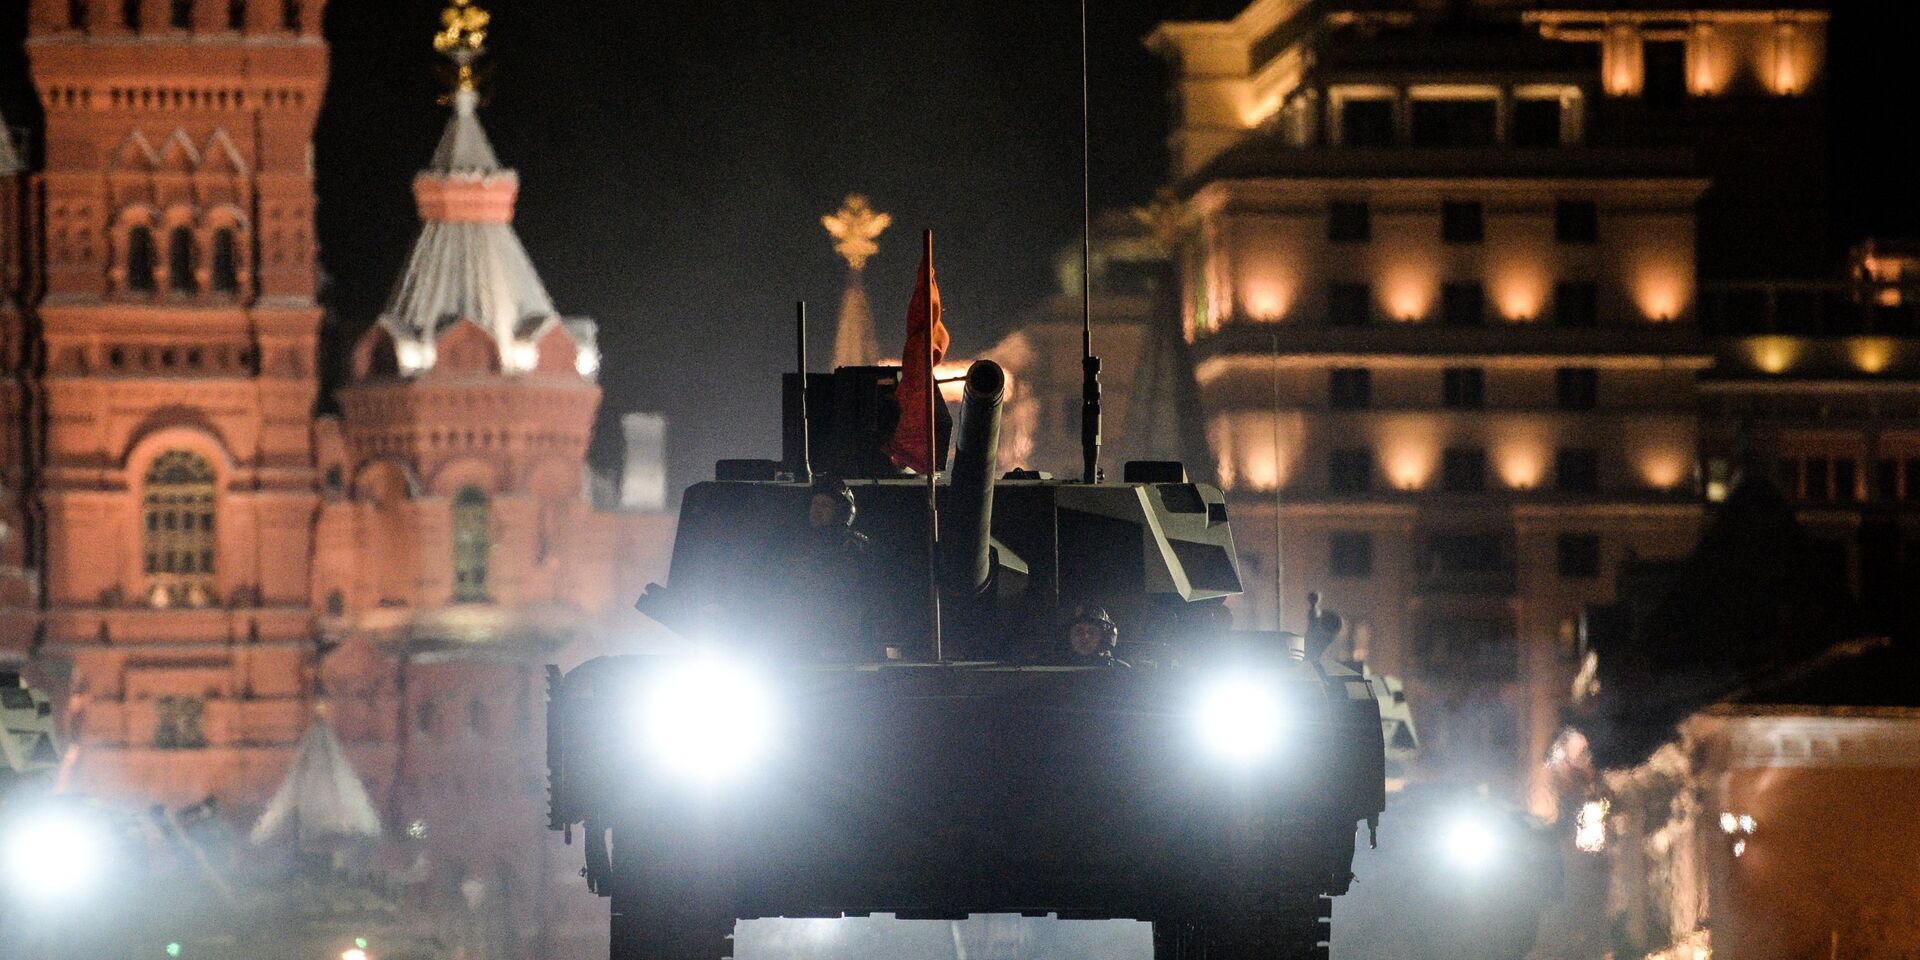 Танк Т-14 Армата на репетиции военного парада на Красной площади в Москве. 2017 год  - ИноСМИ, 1920, 28.04.2022